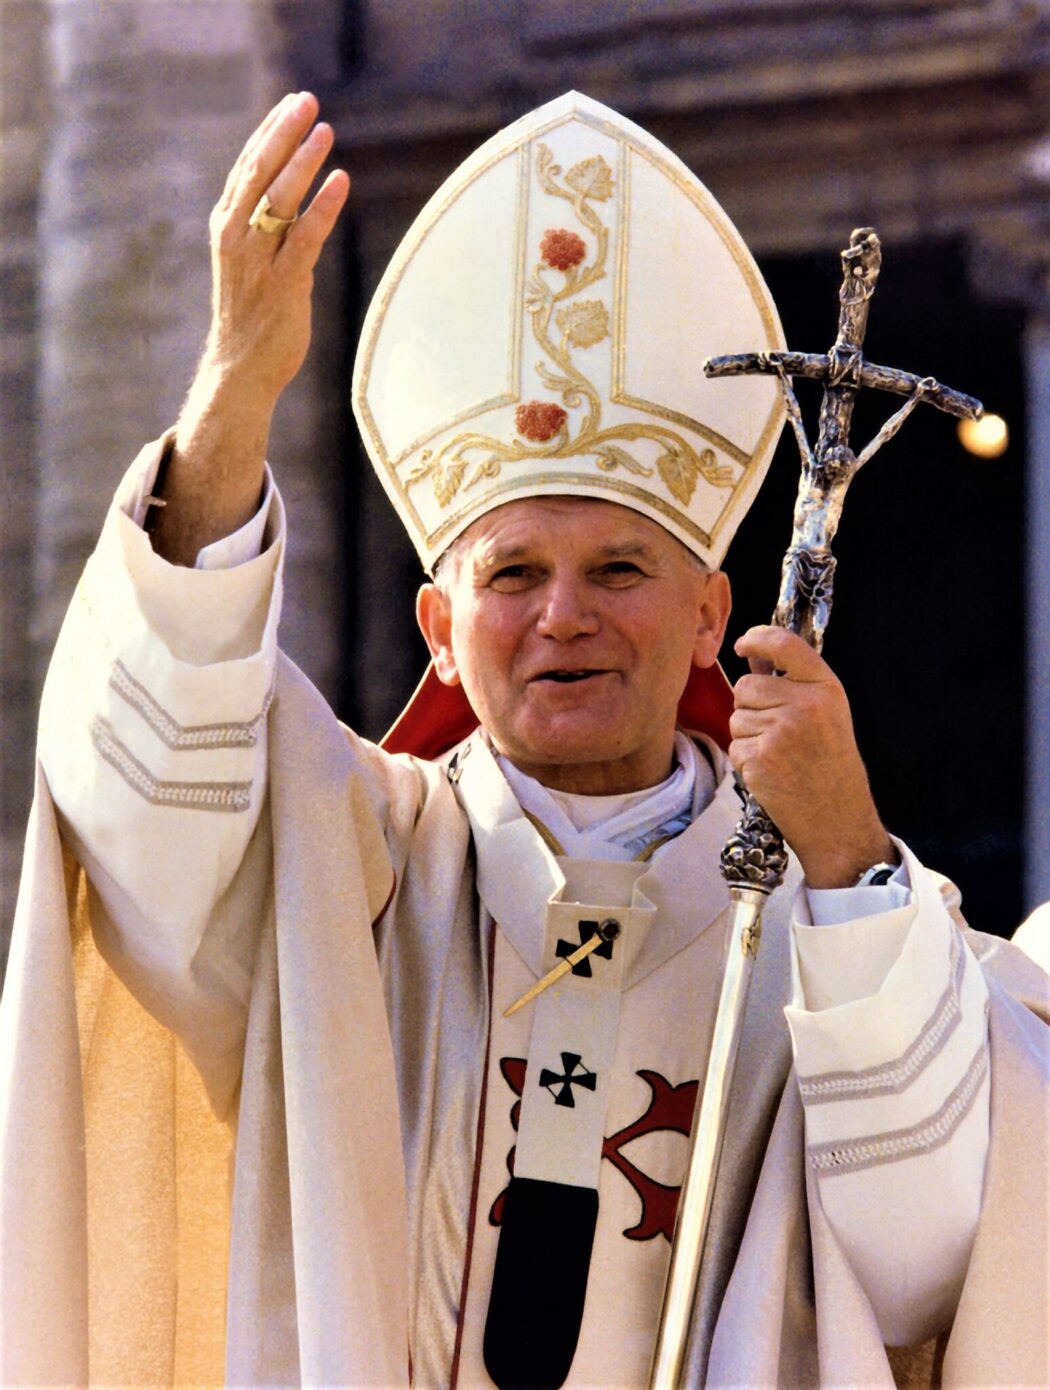 Le Saint-Père Jean-Paul II avait décidé de procéder lui-même au sacre d’un successeur à Mgr Lefebvre